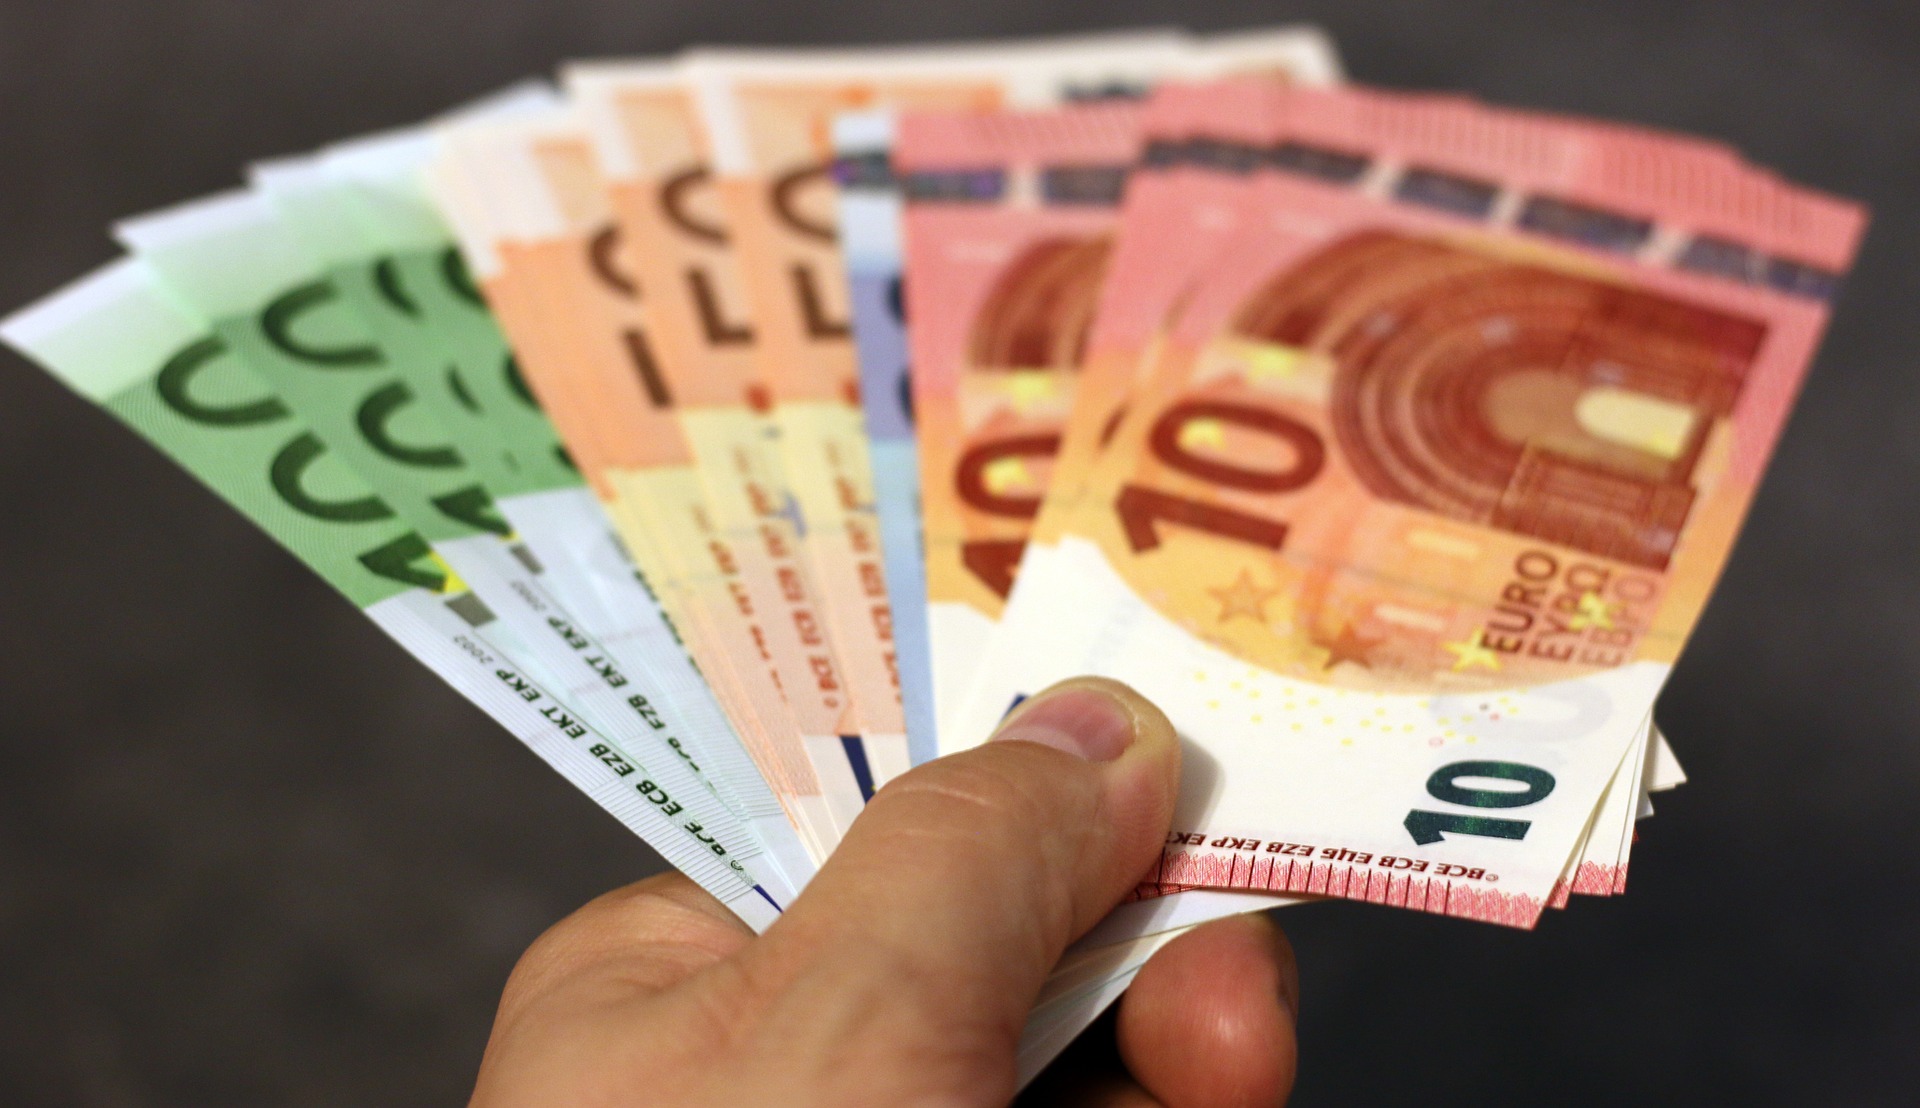 ŠTIGLIC: Postoje argumenti da Hrvatska pričeka s uvođenjem eura